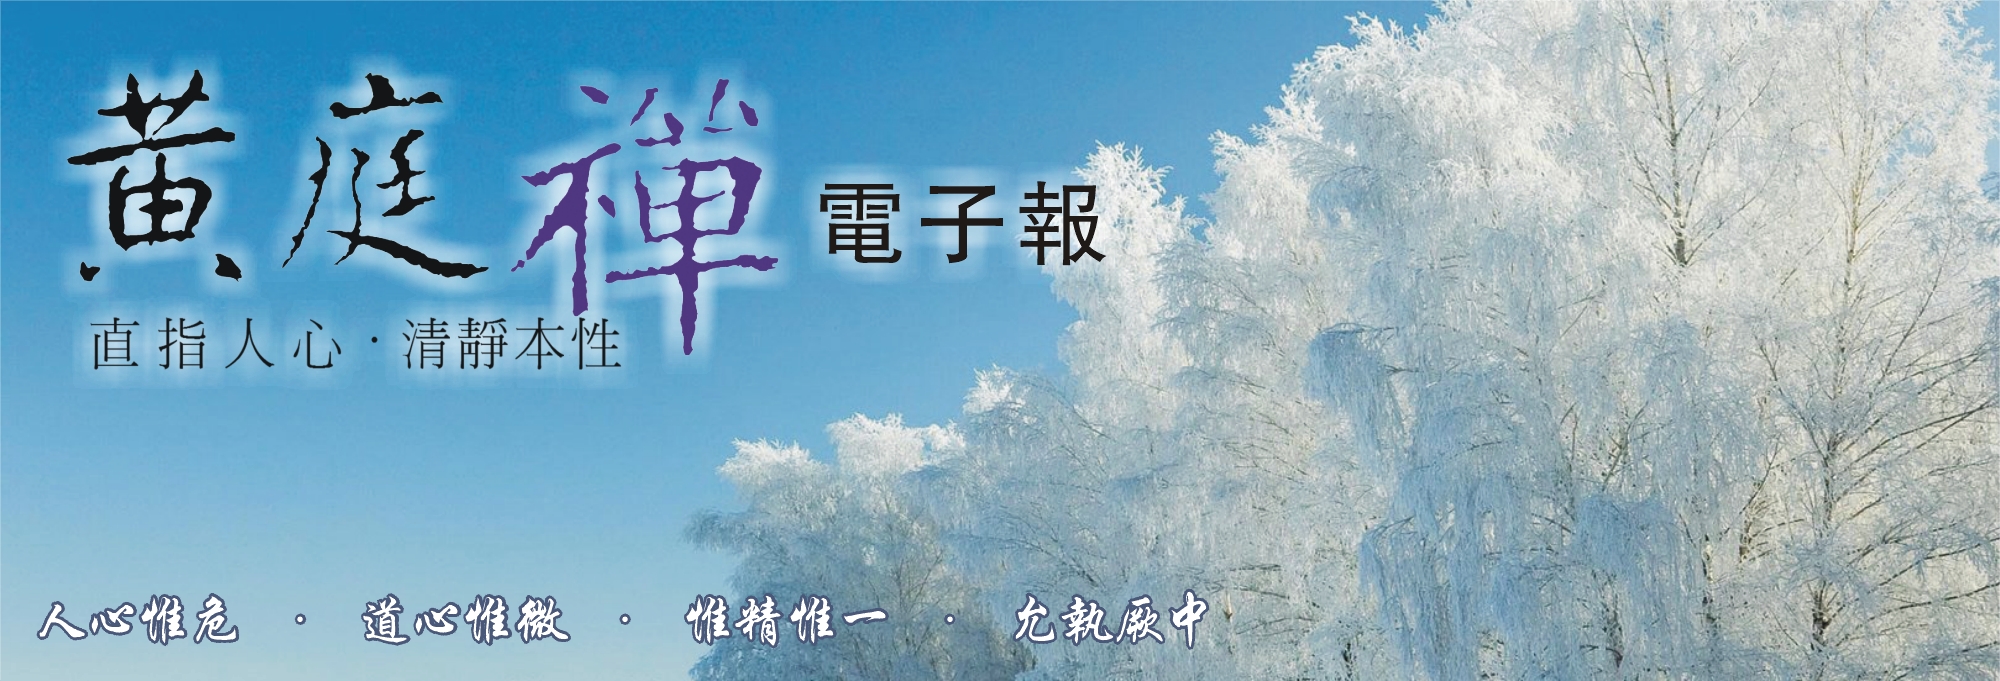 中華黃庭禪學會2014.12.11電子報